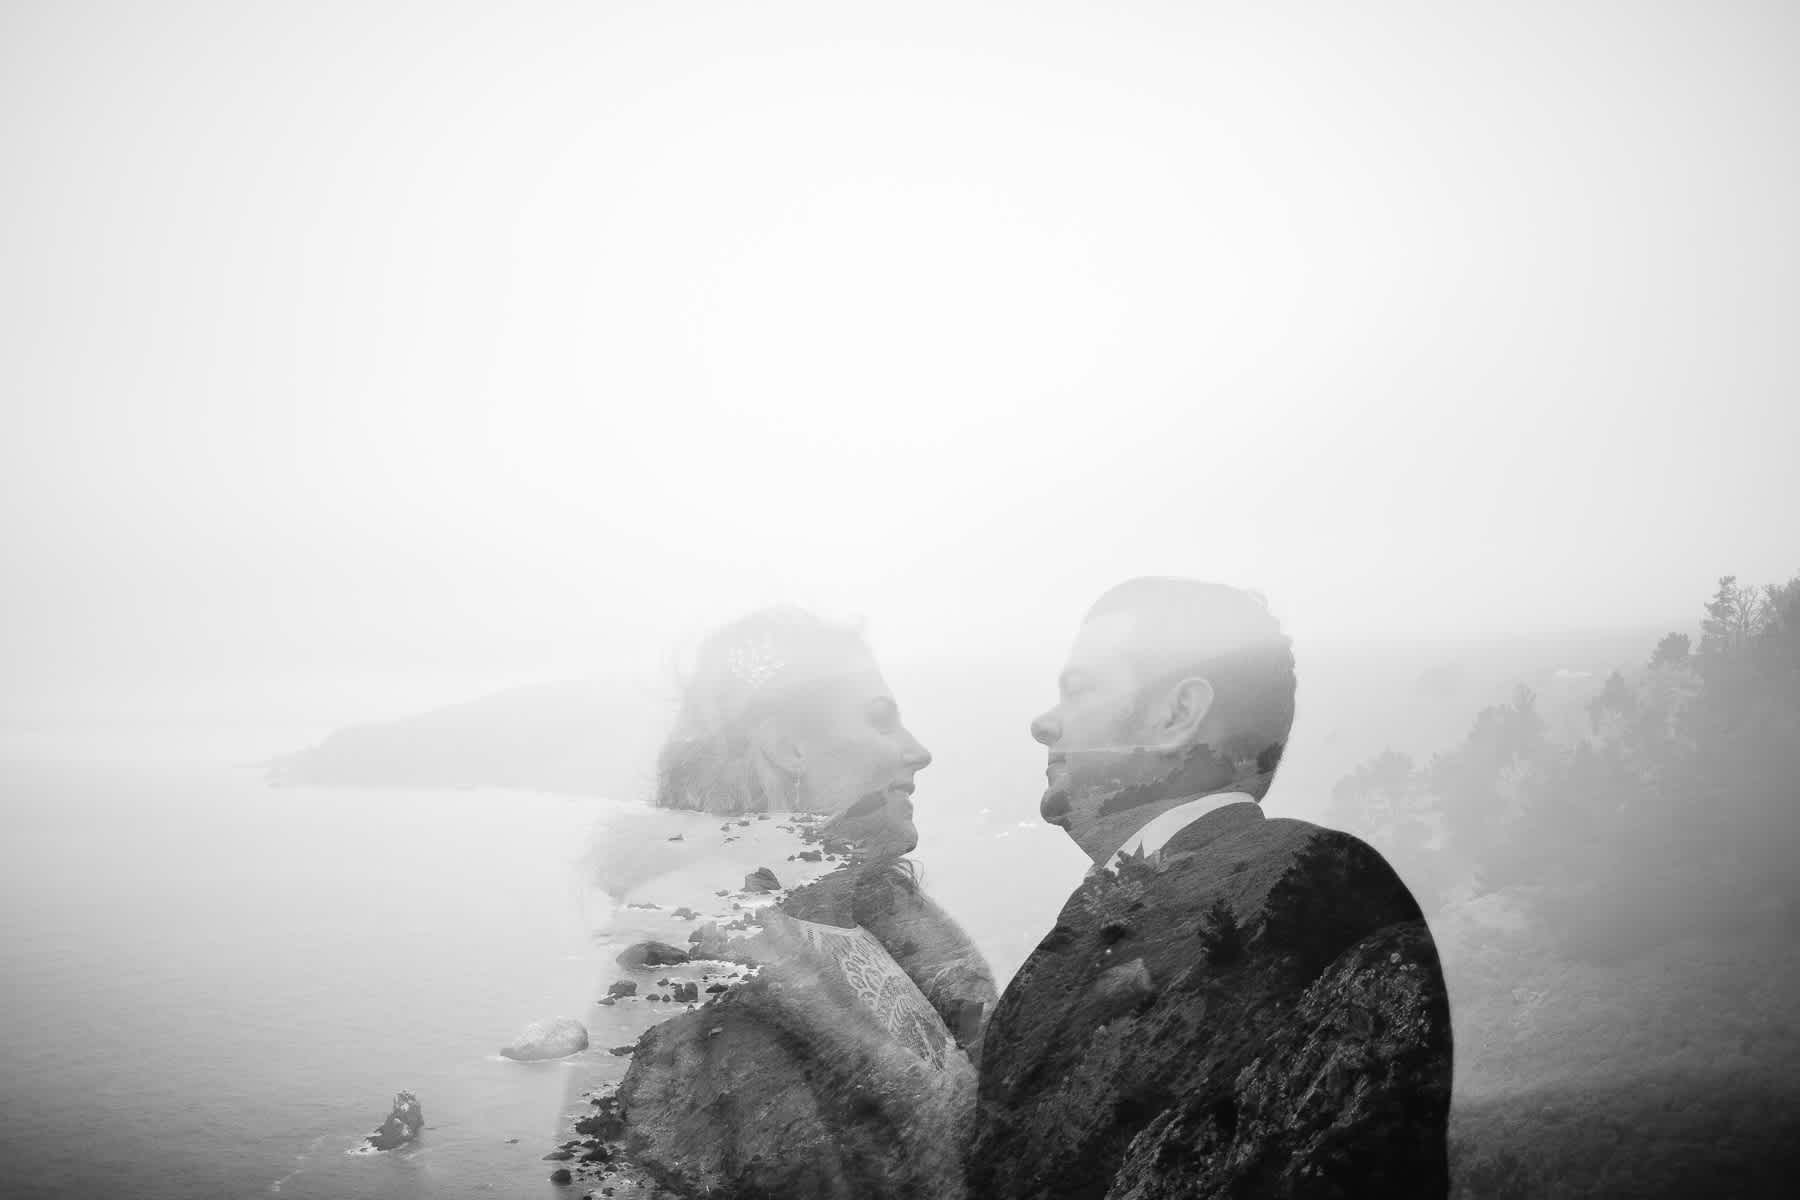 muir-beach-pelican-inn-foggy-wedding-93